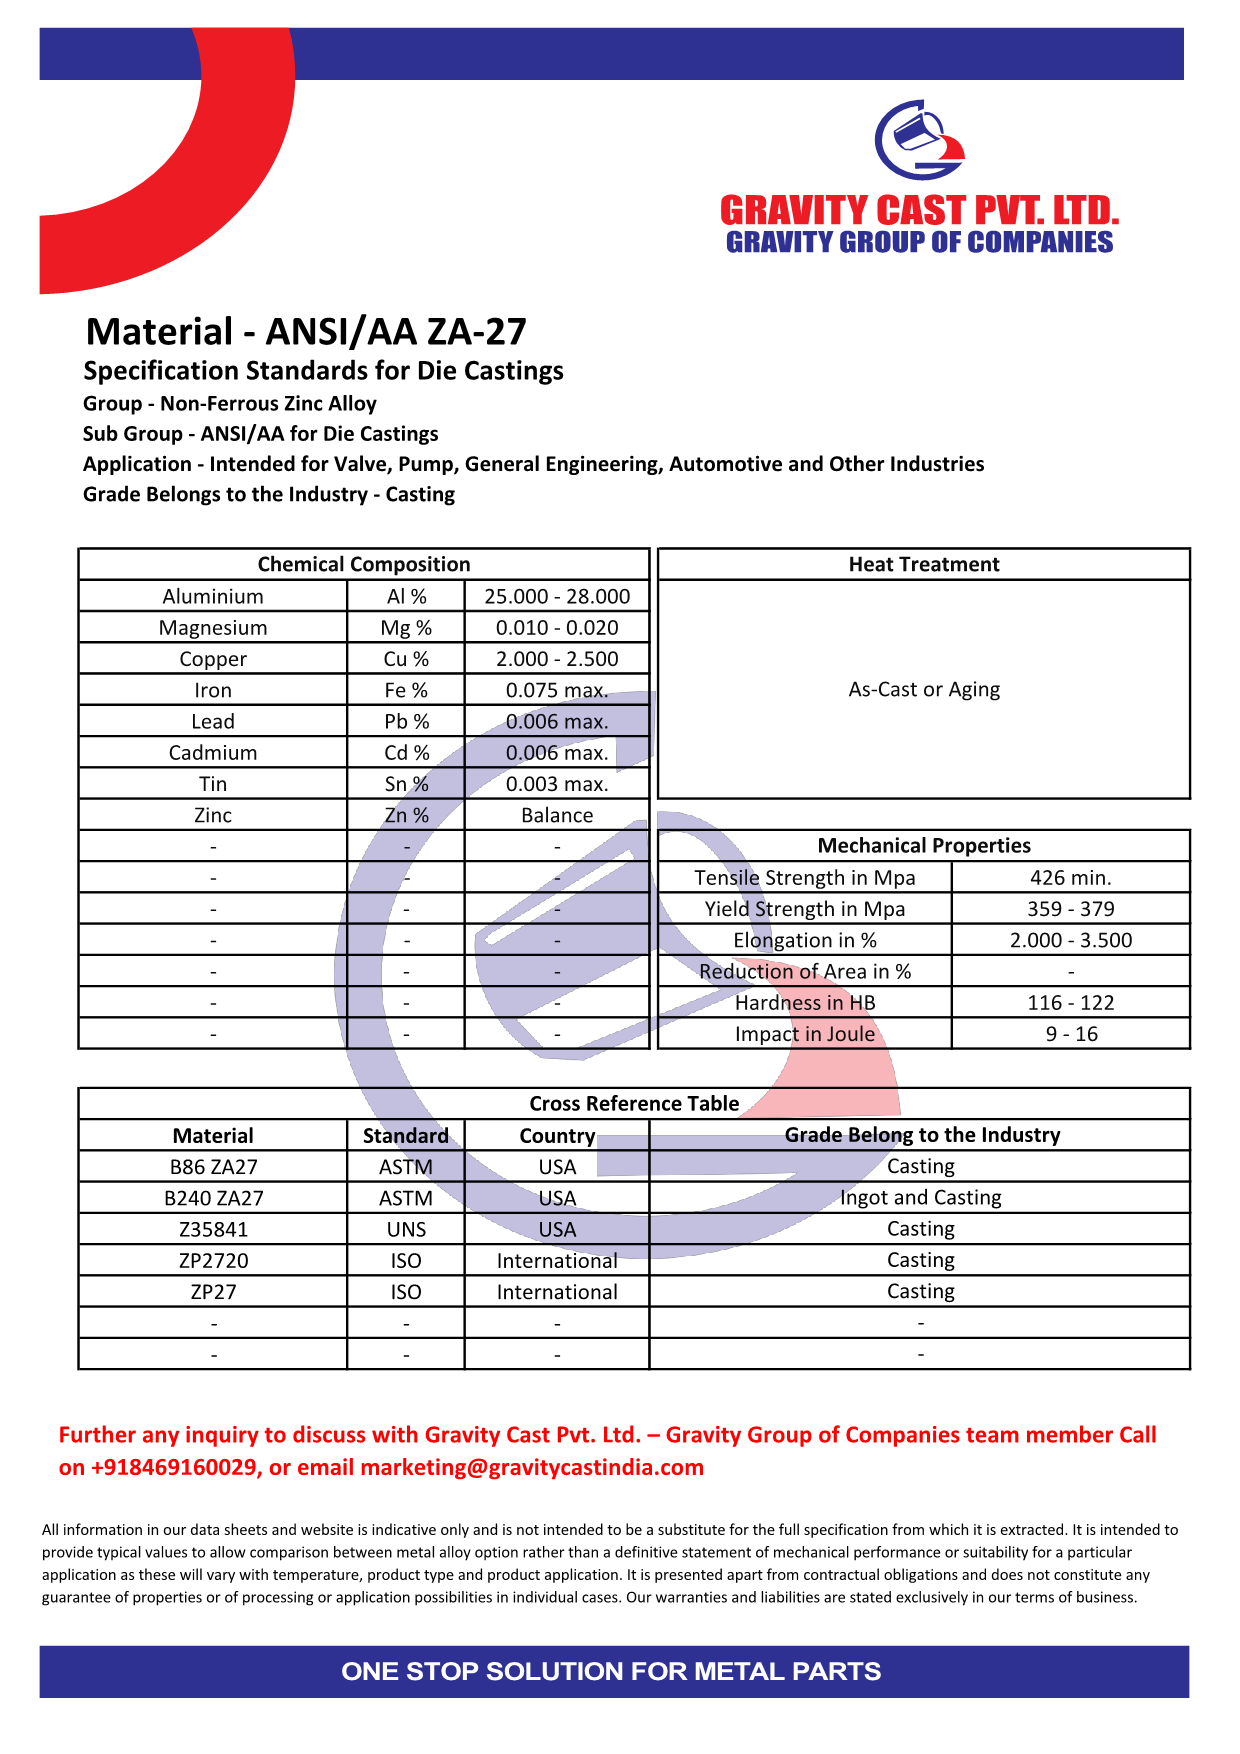 ANSI AA ZA-27.pdf